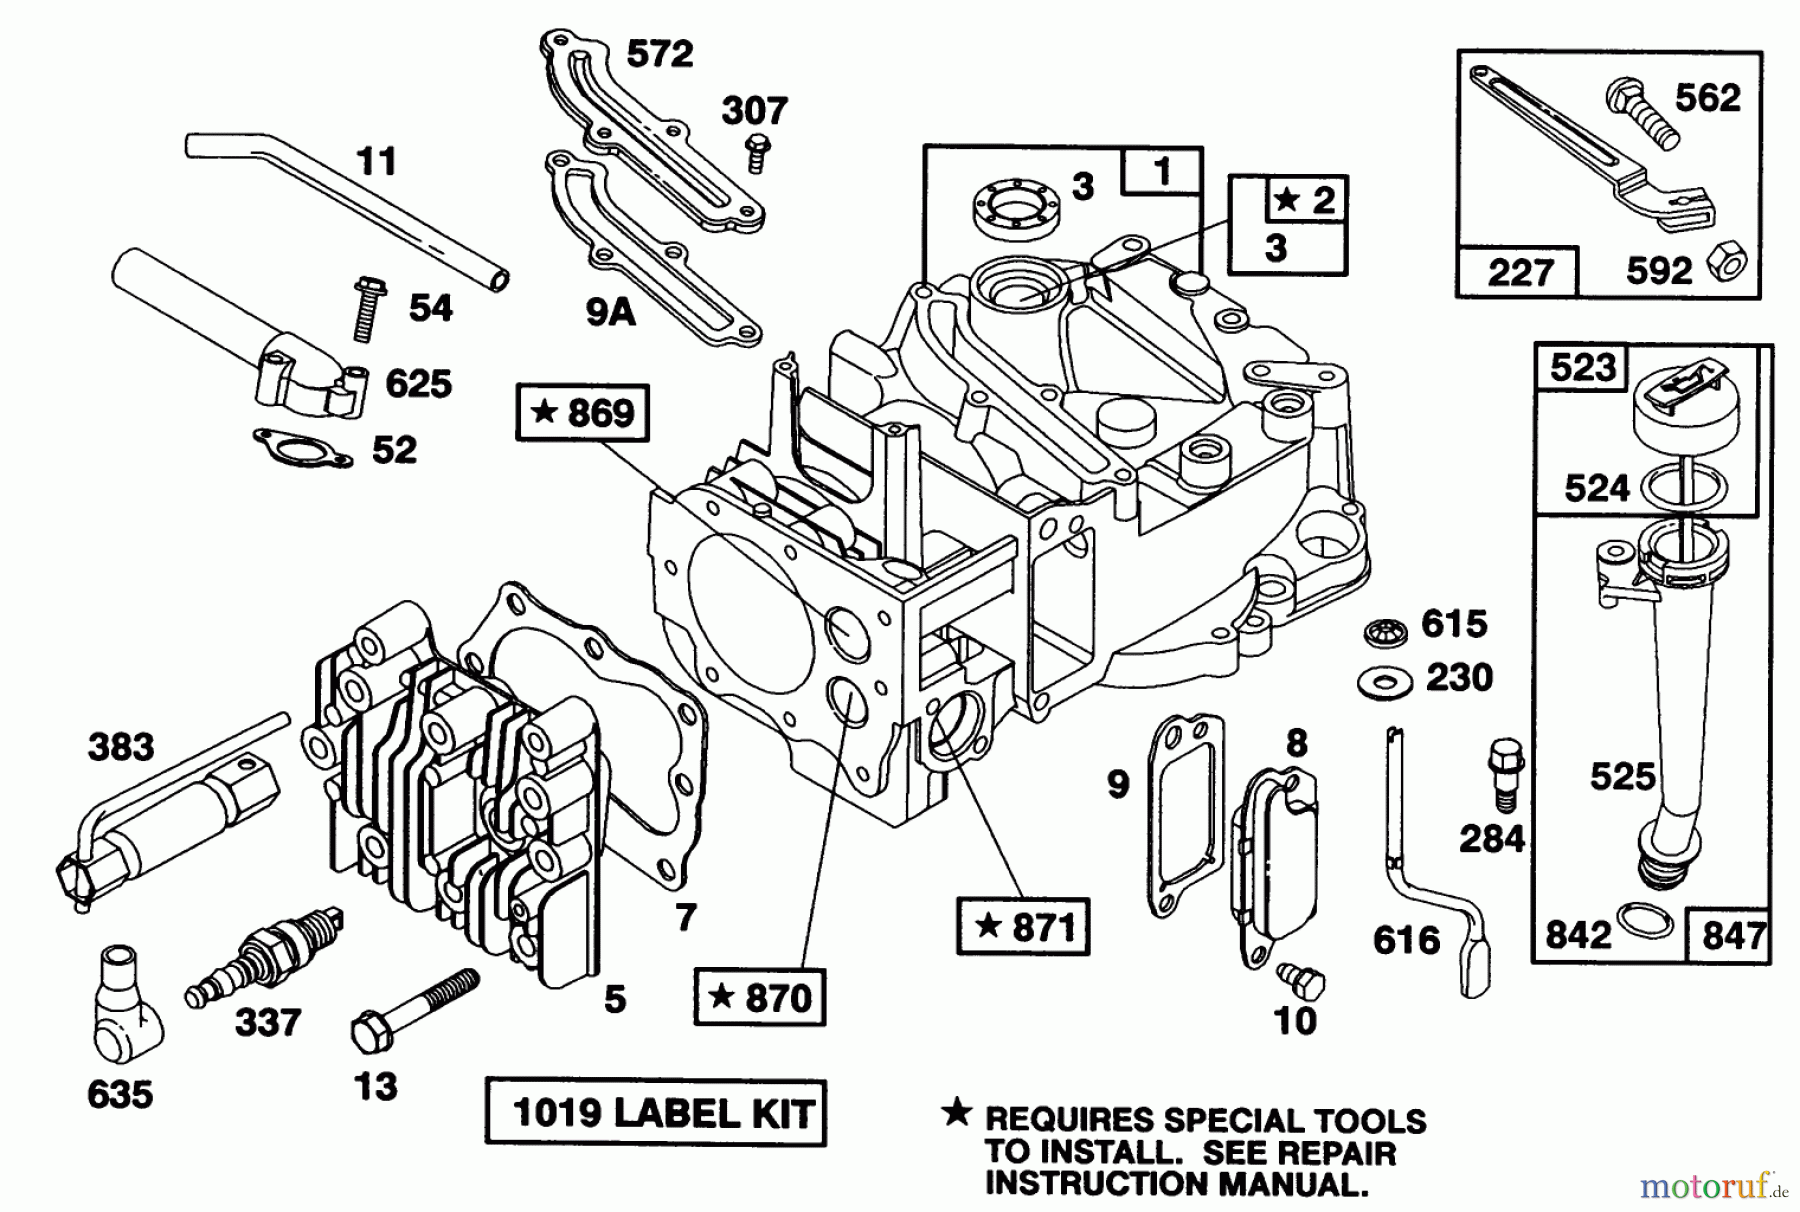  Toro Neu Mowers, Walk-Behind Seite 1 16400 - Toro Lawnmower, 1993 (3900001-3999999) ENGINE BRIGGS & STRATTON MODEL 122702-3171-01 #1